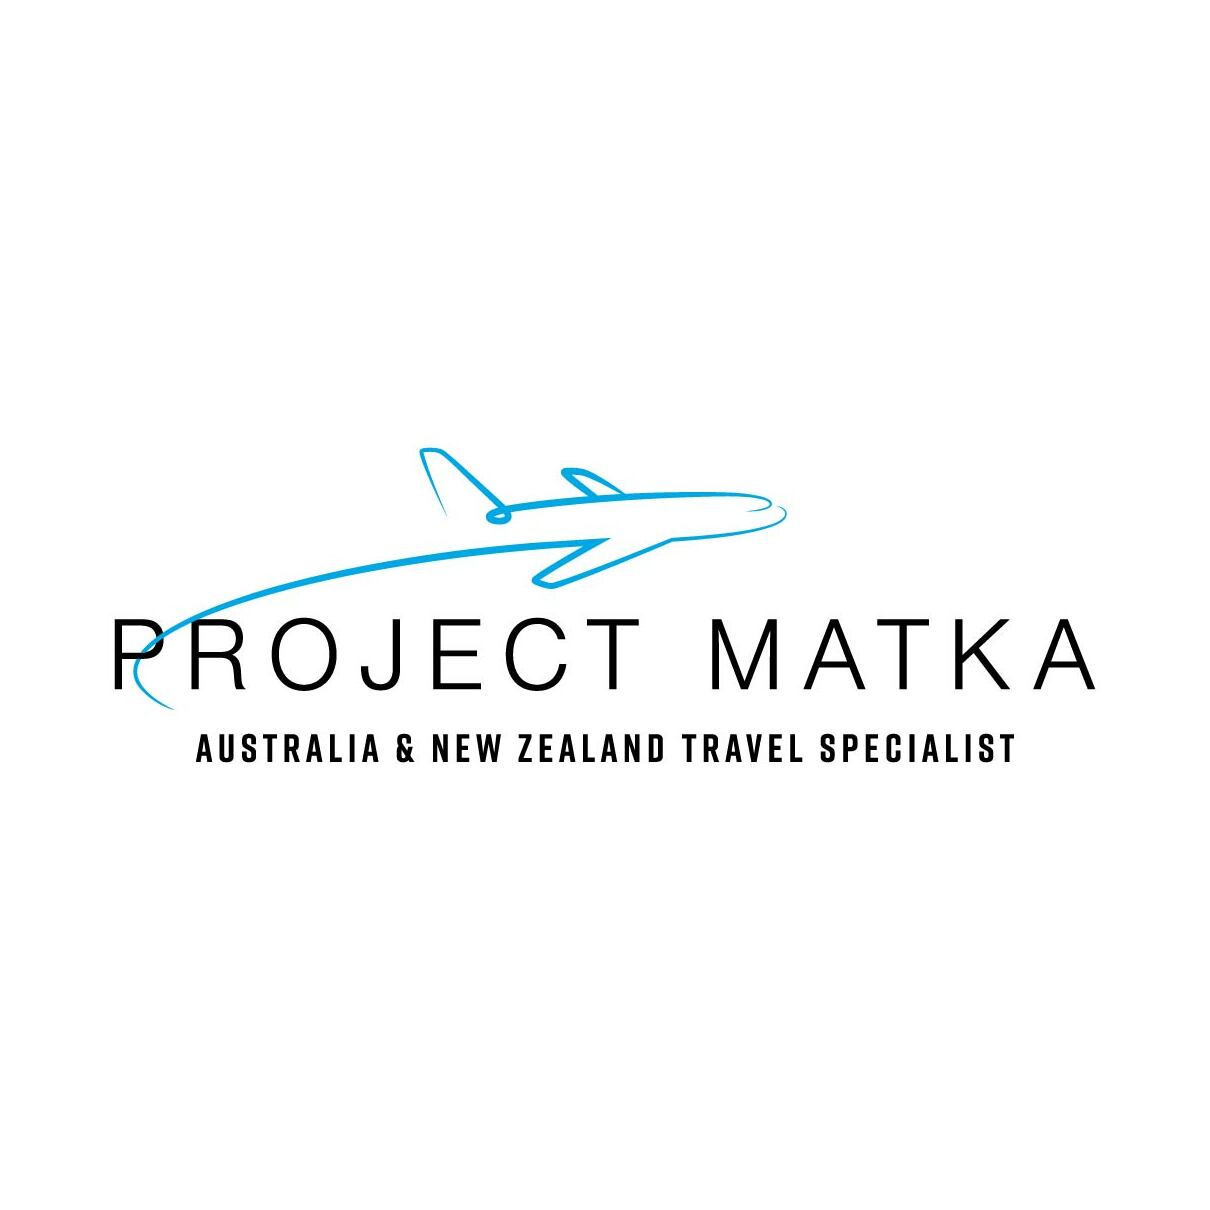 Australia & New Zealand Travel Specialist, Project Matka Pty Ltd